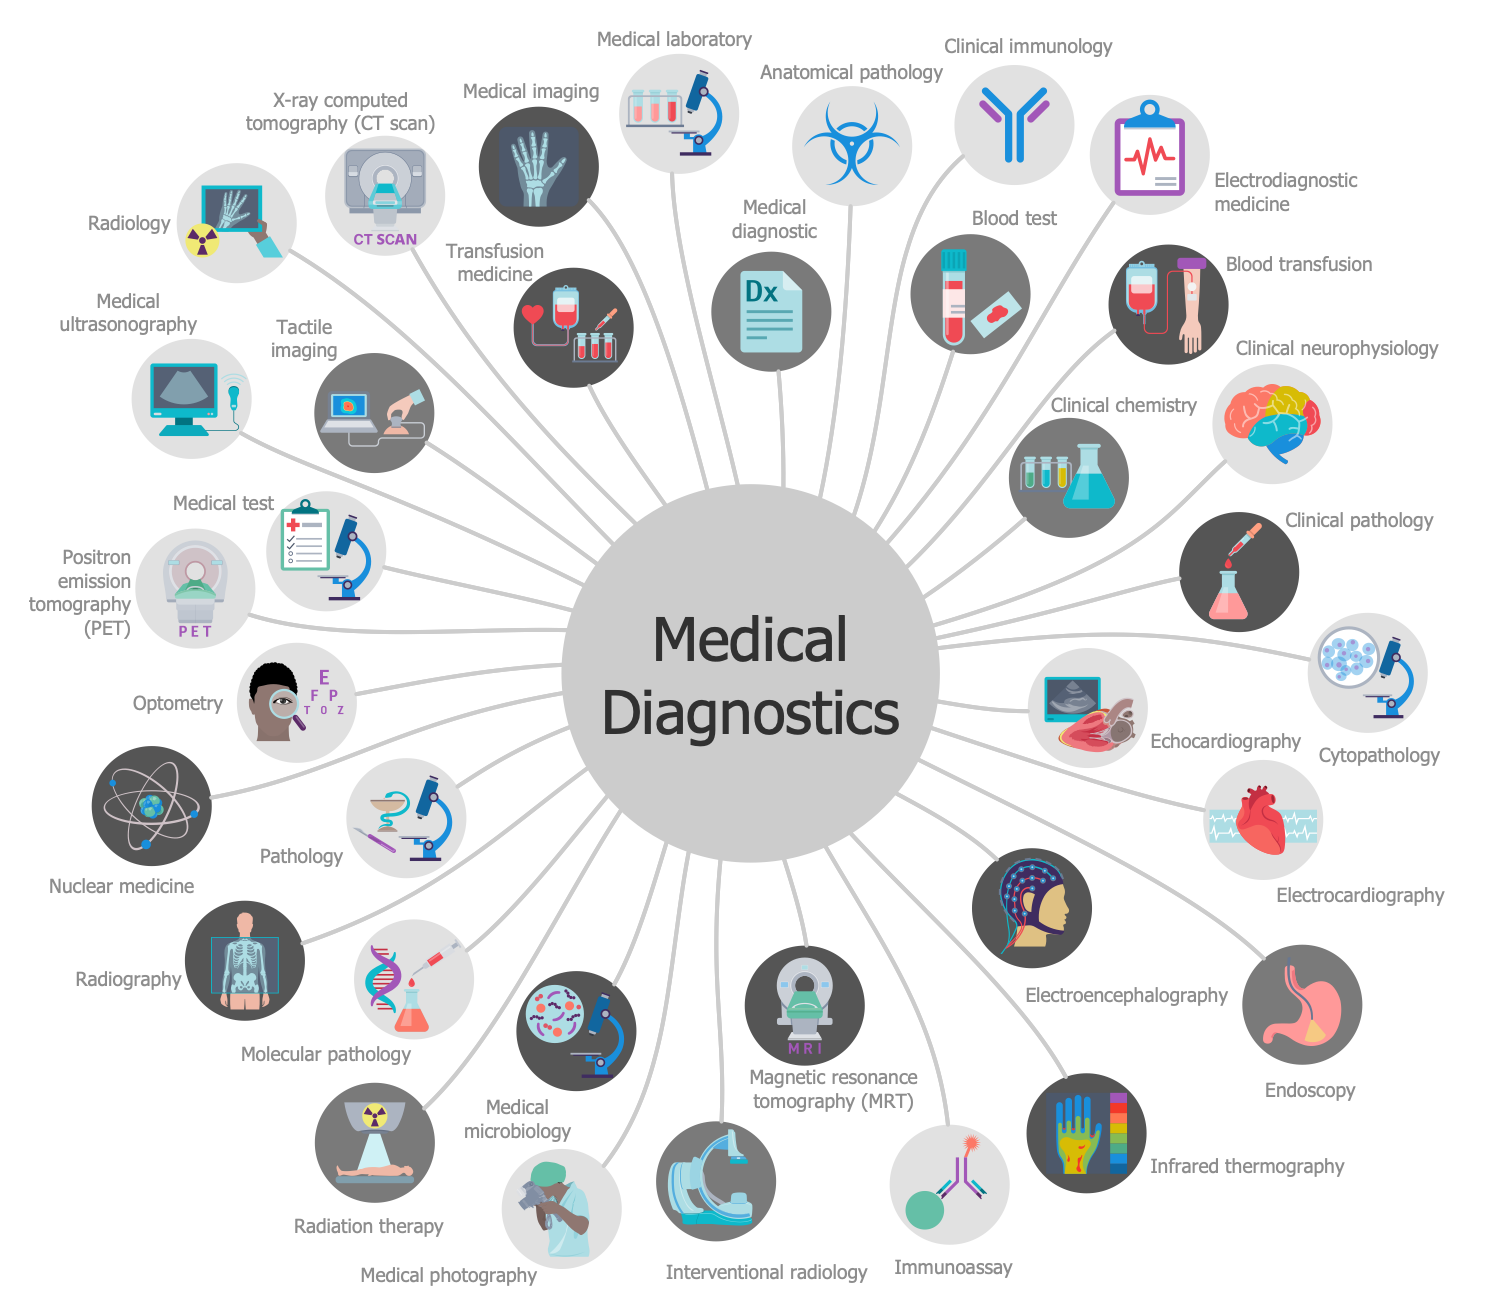 Medical Diagnostics